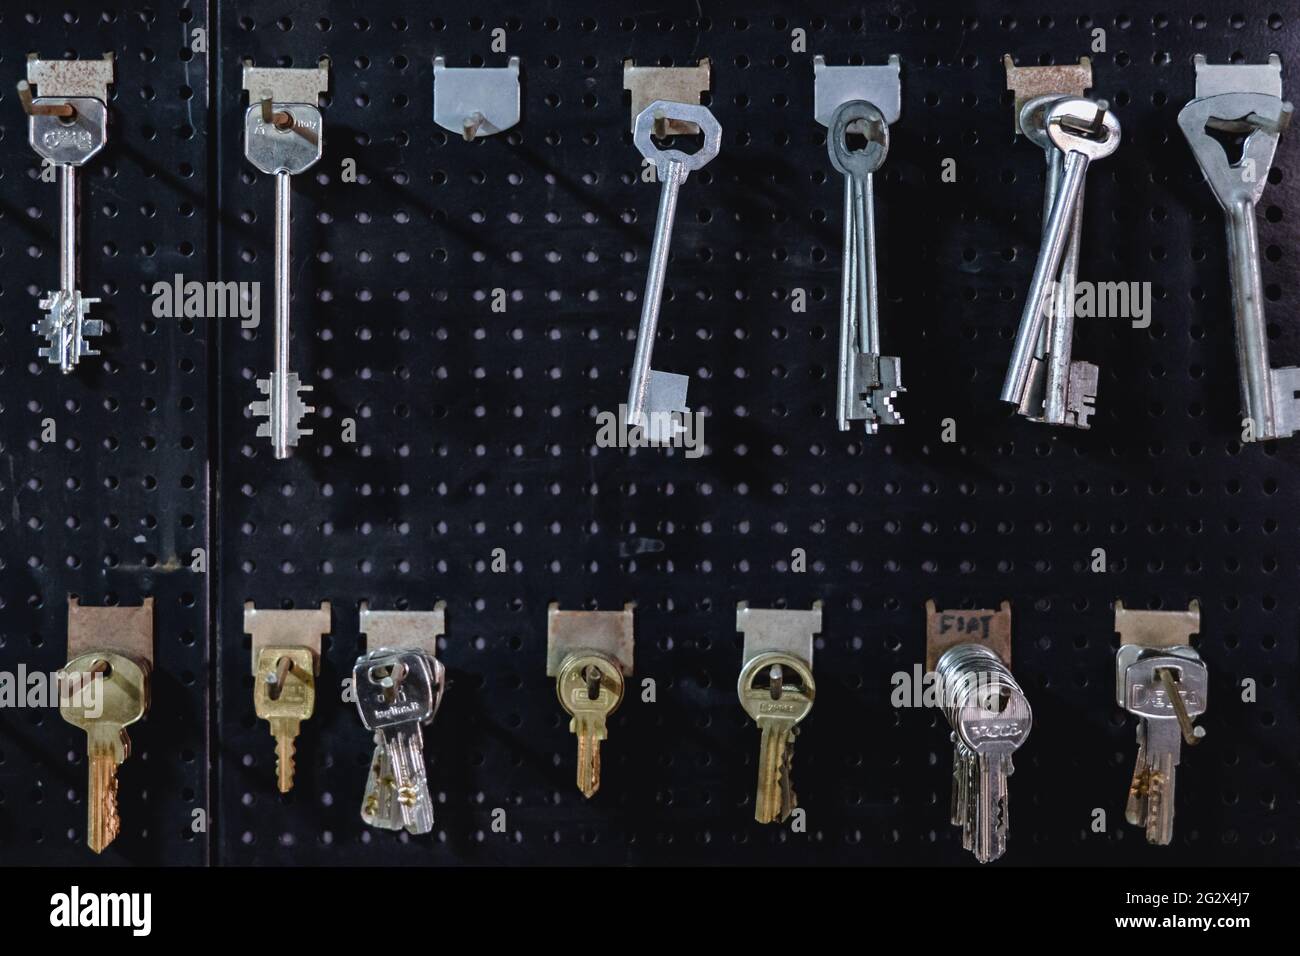 Locksmith key maker tools Stock Photo by pedrulito